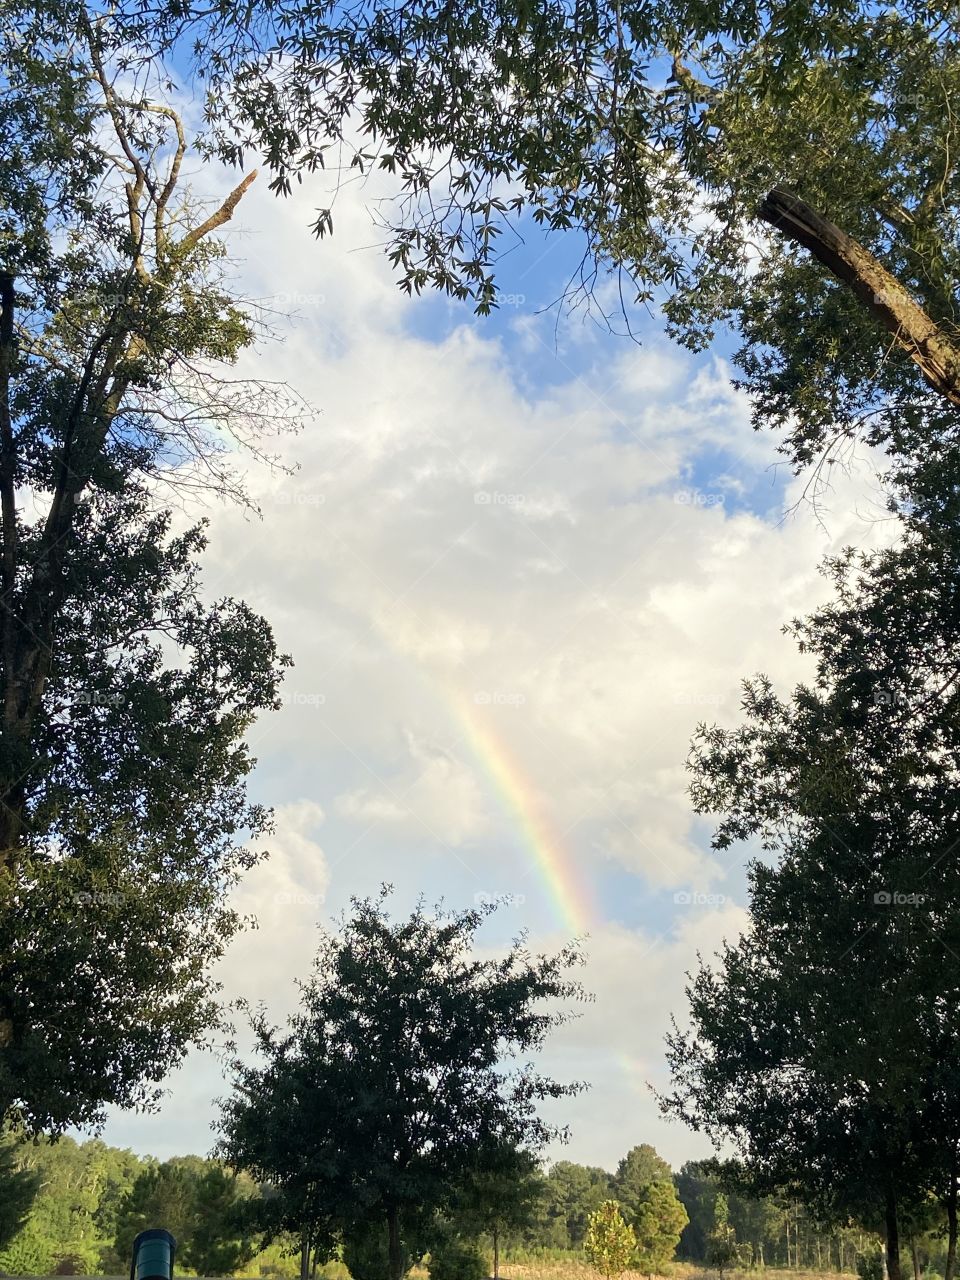 A pretty rainbow 🌈